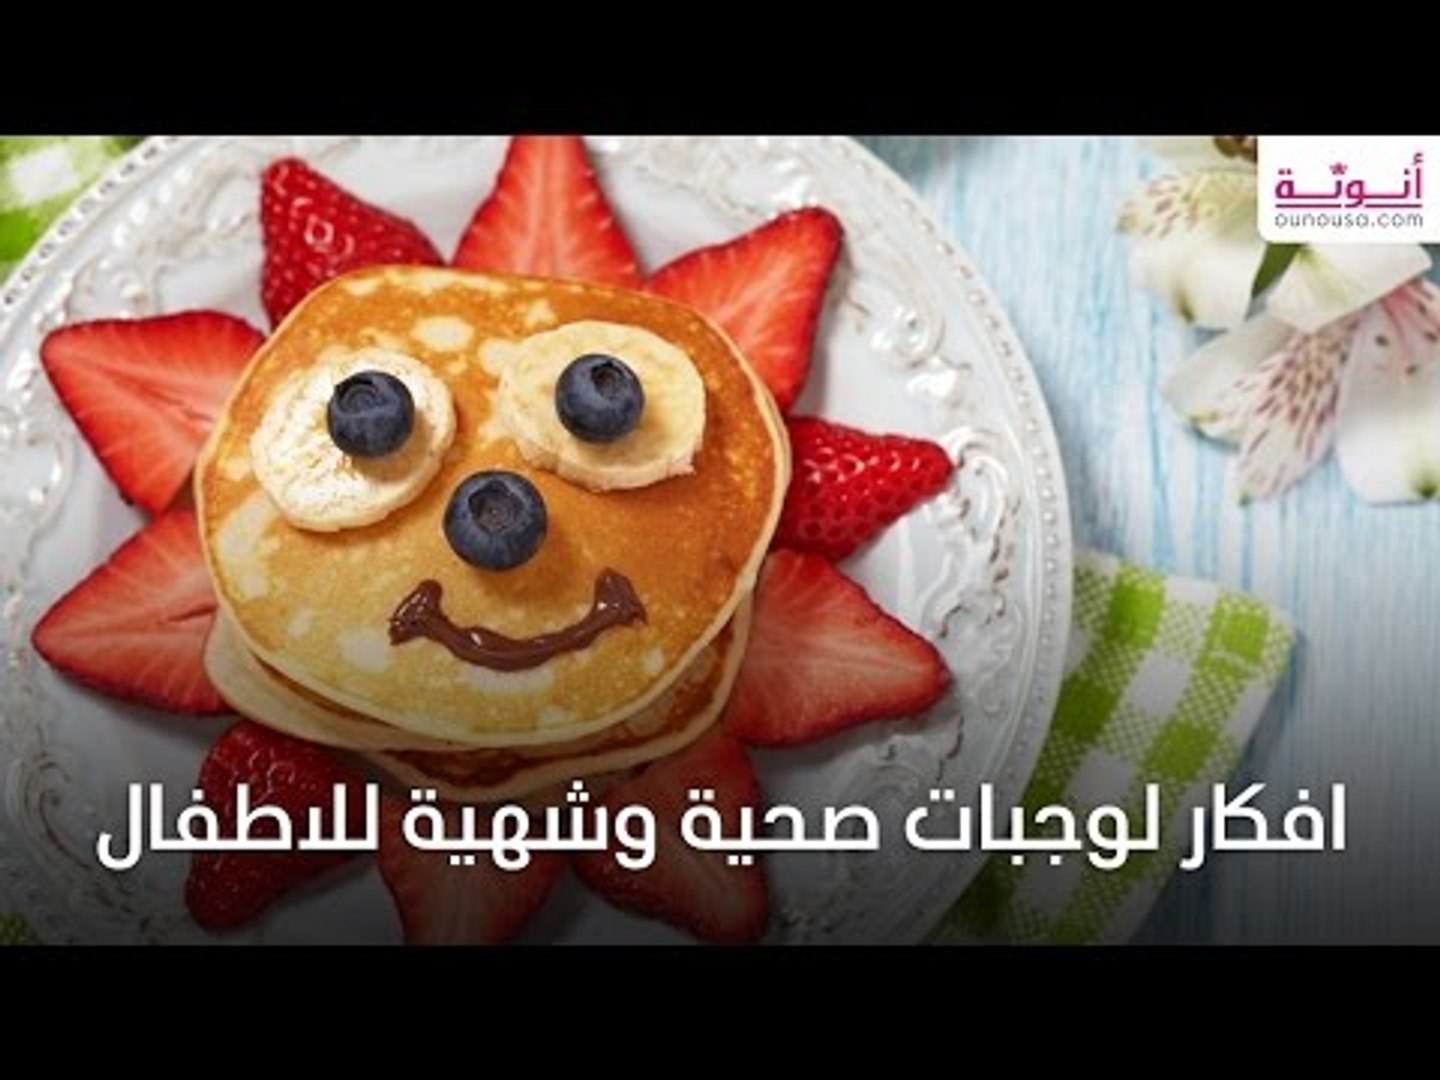 افكار وجبات صحية وشهية للاطفال - فيديو Dailymotion